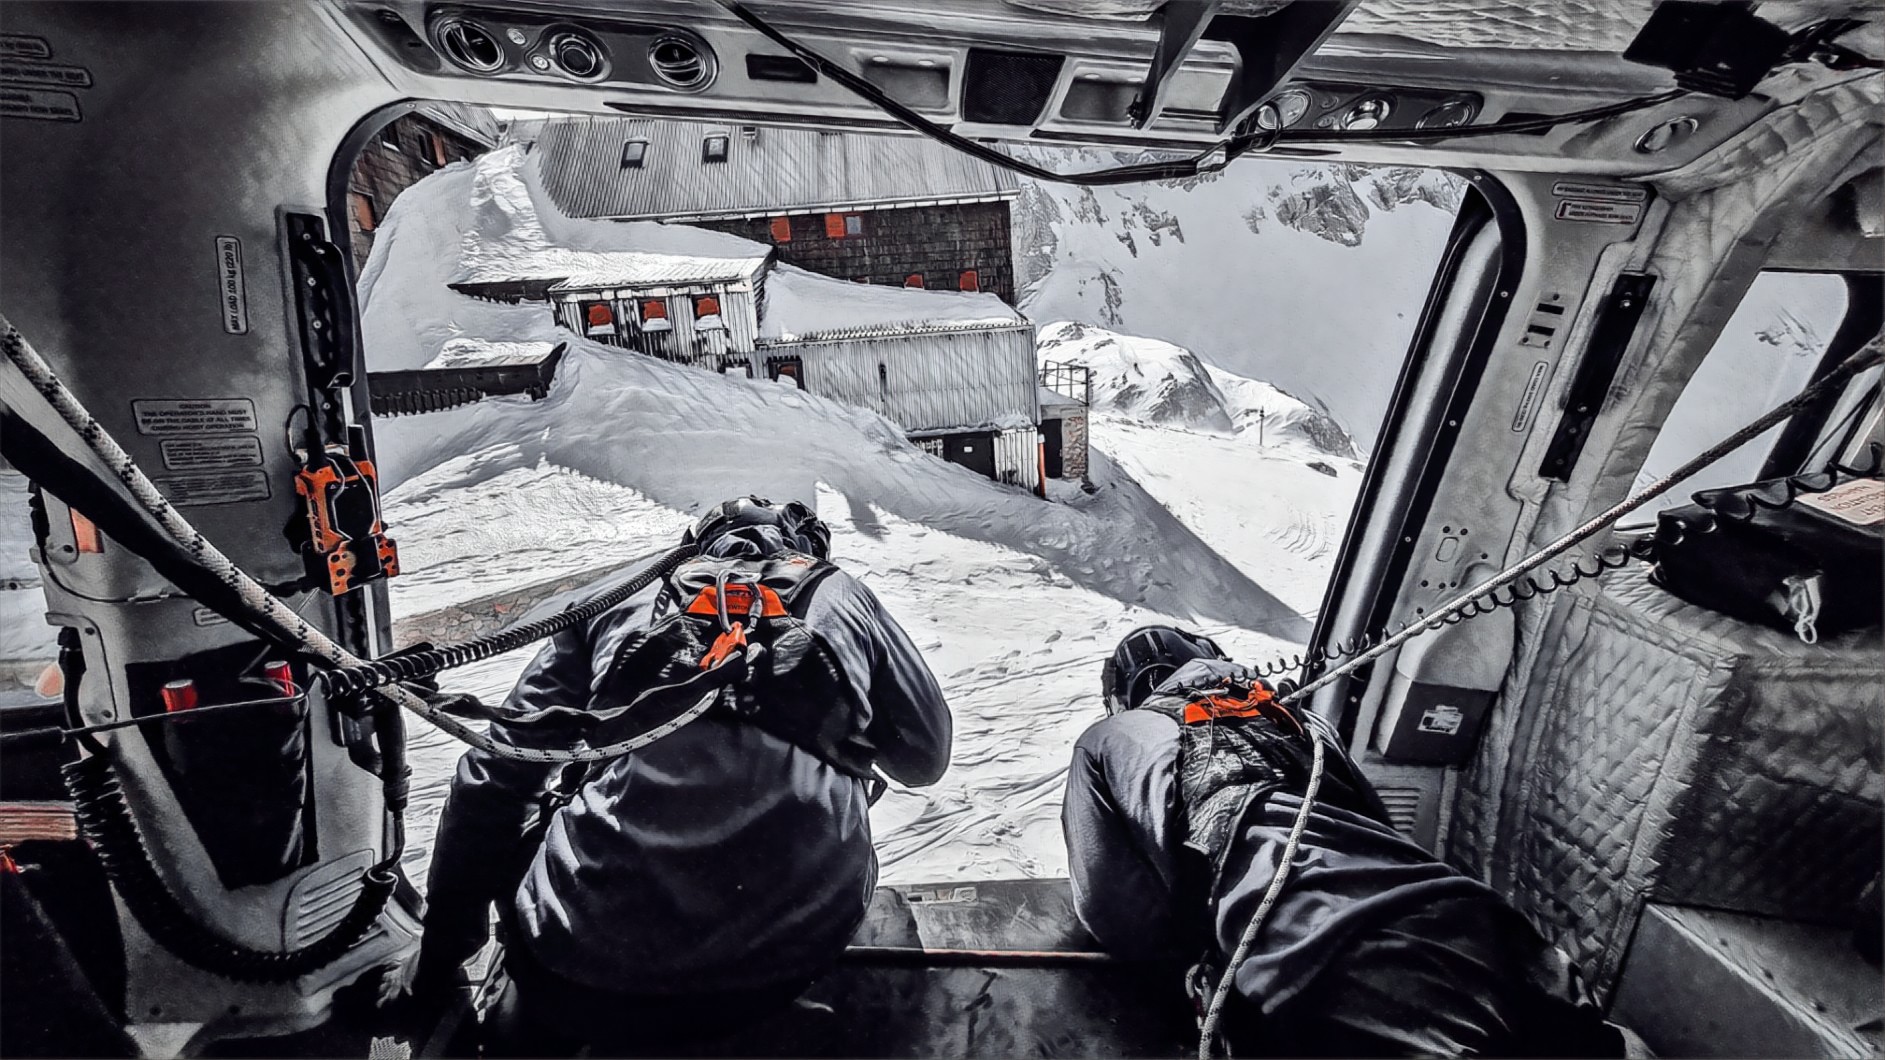 Gorska reševalca se nagibata iz policijskega helikopterja v gorah pozimi, pogled iz kabine